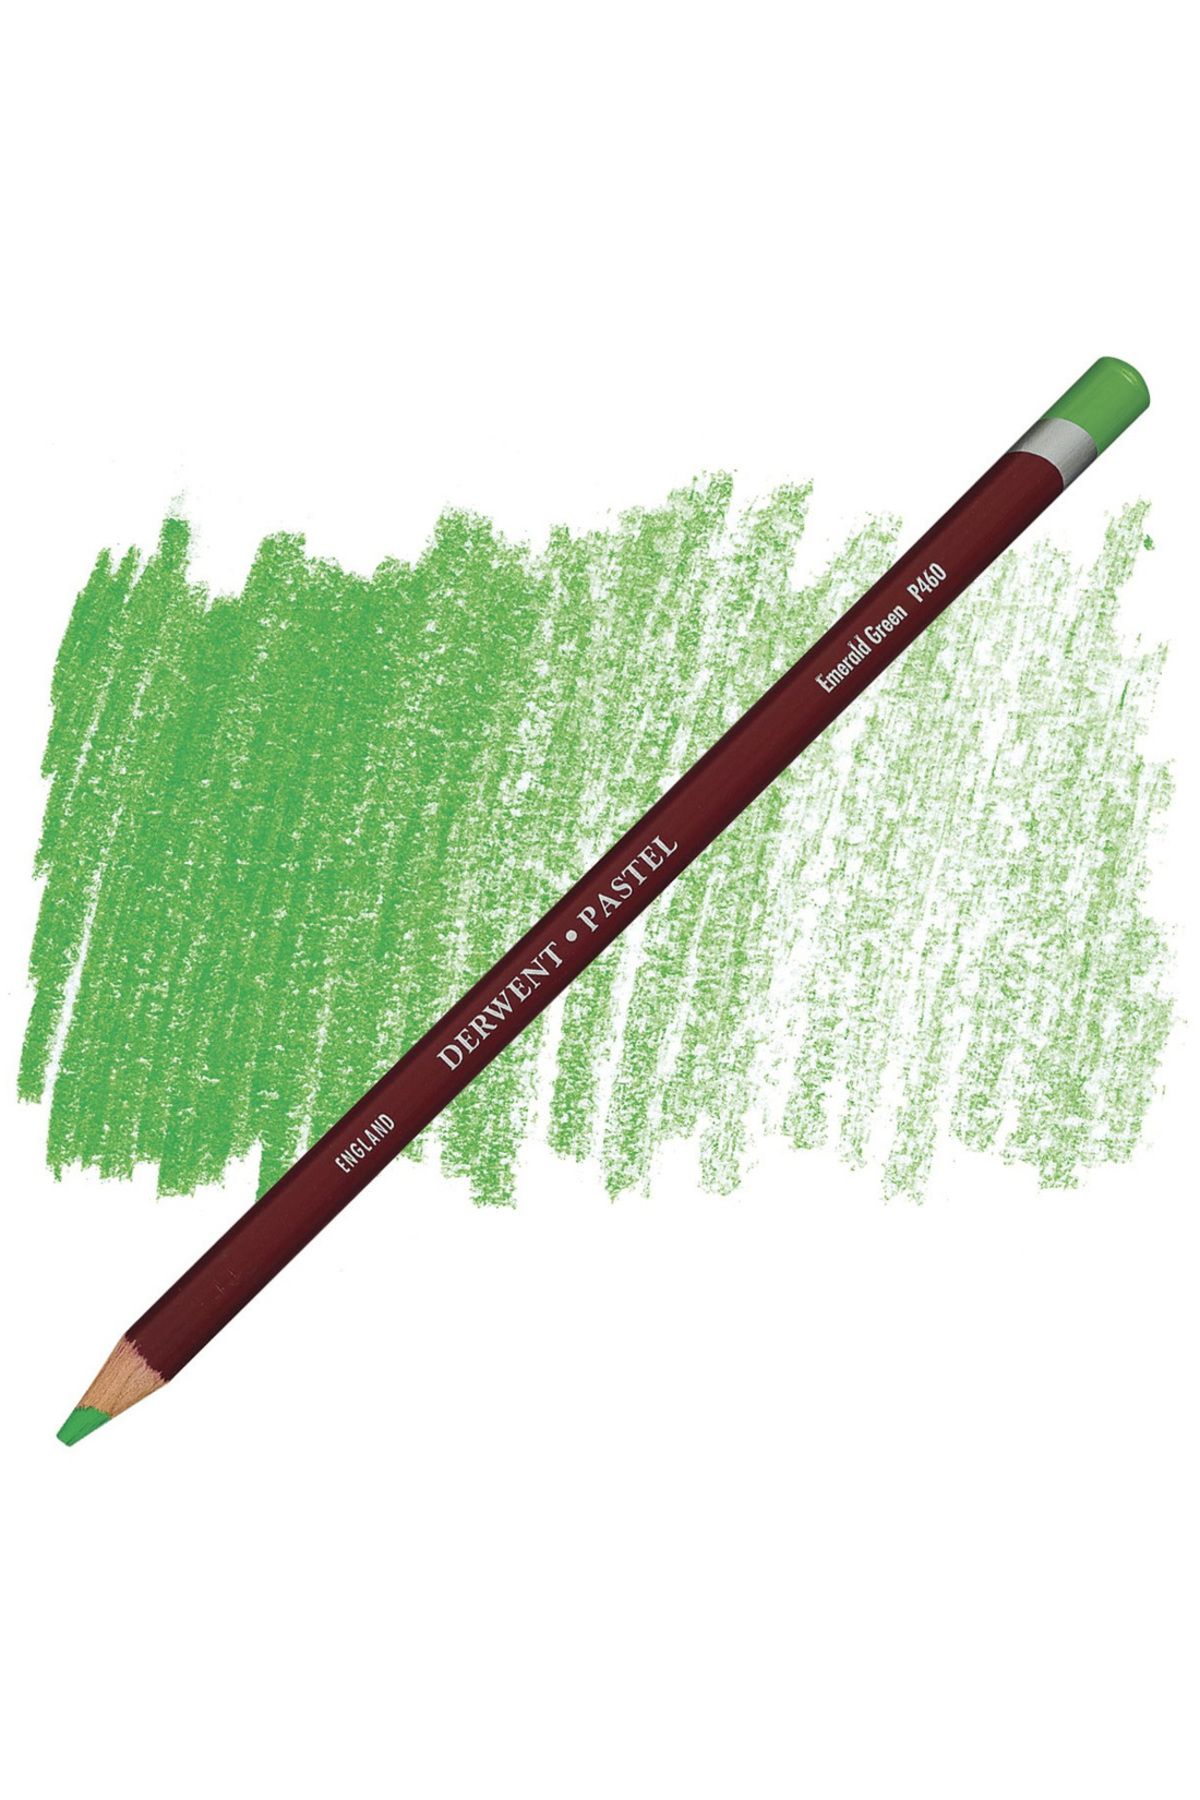 Derwent Pastel Pencil P460 Emerald Green